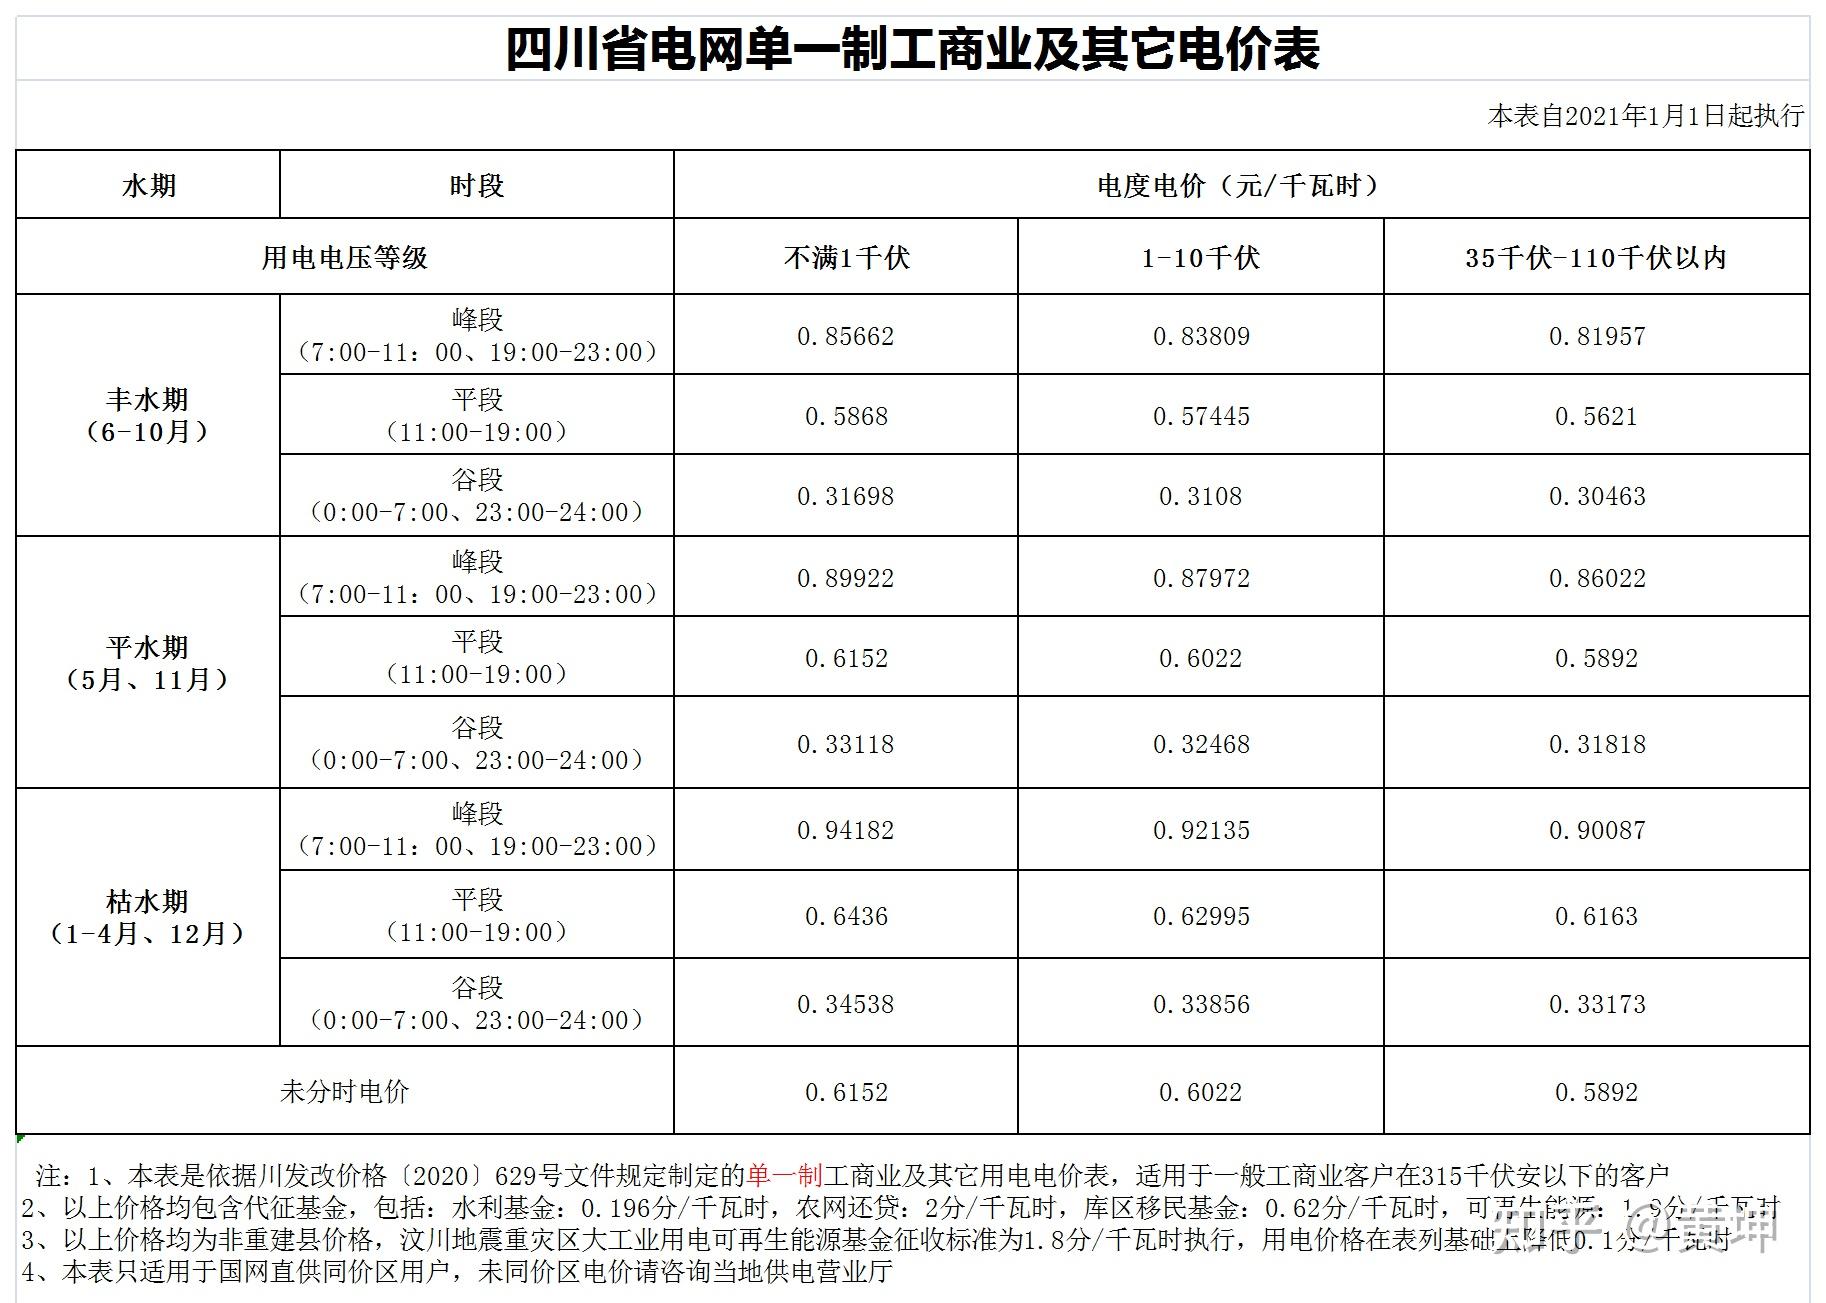 上海家庭用电阶梯价格表最新，2023上海电费分时段收费标准 - 唐山味儿